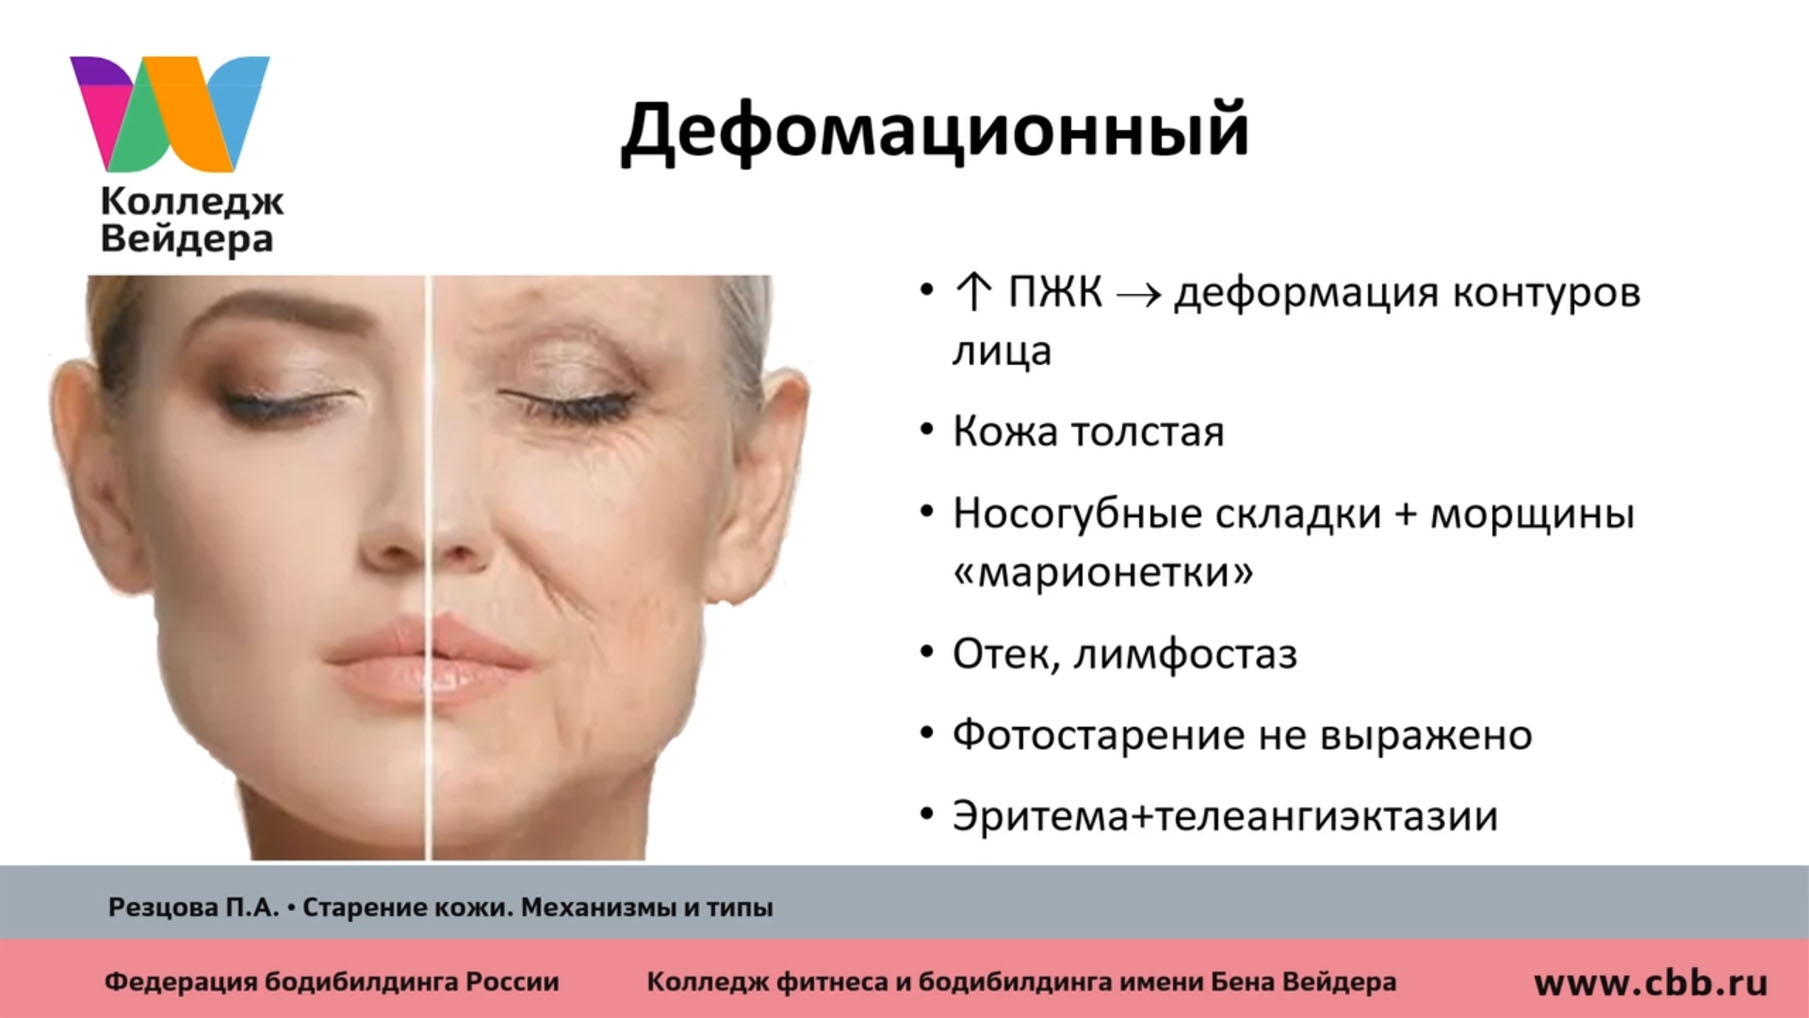 Программа старения лица по фото на андроид